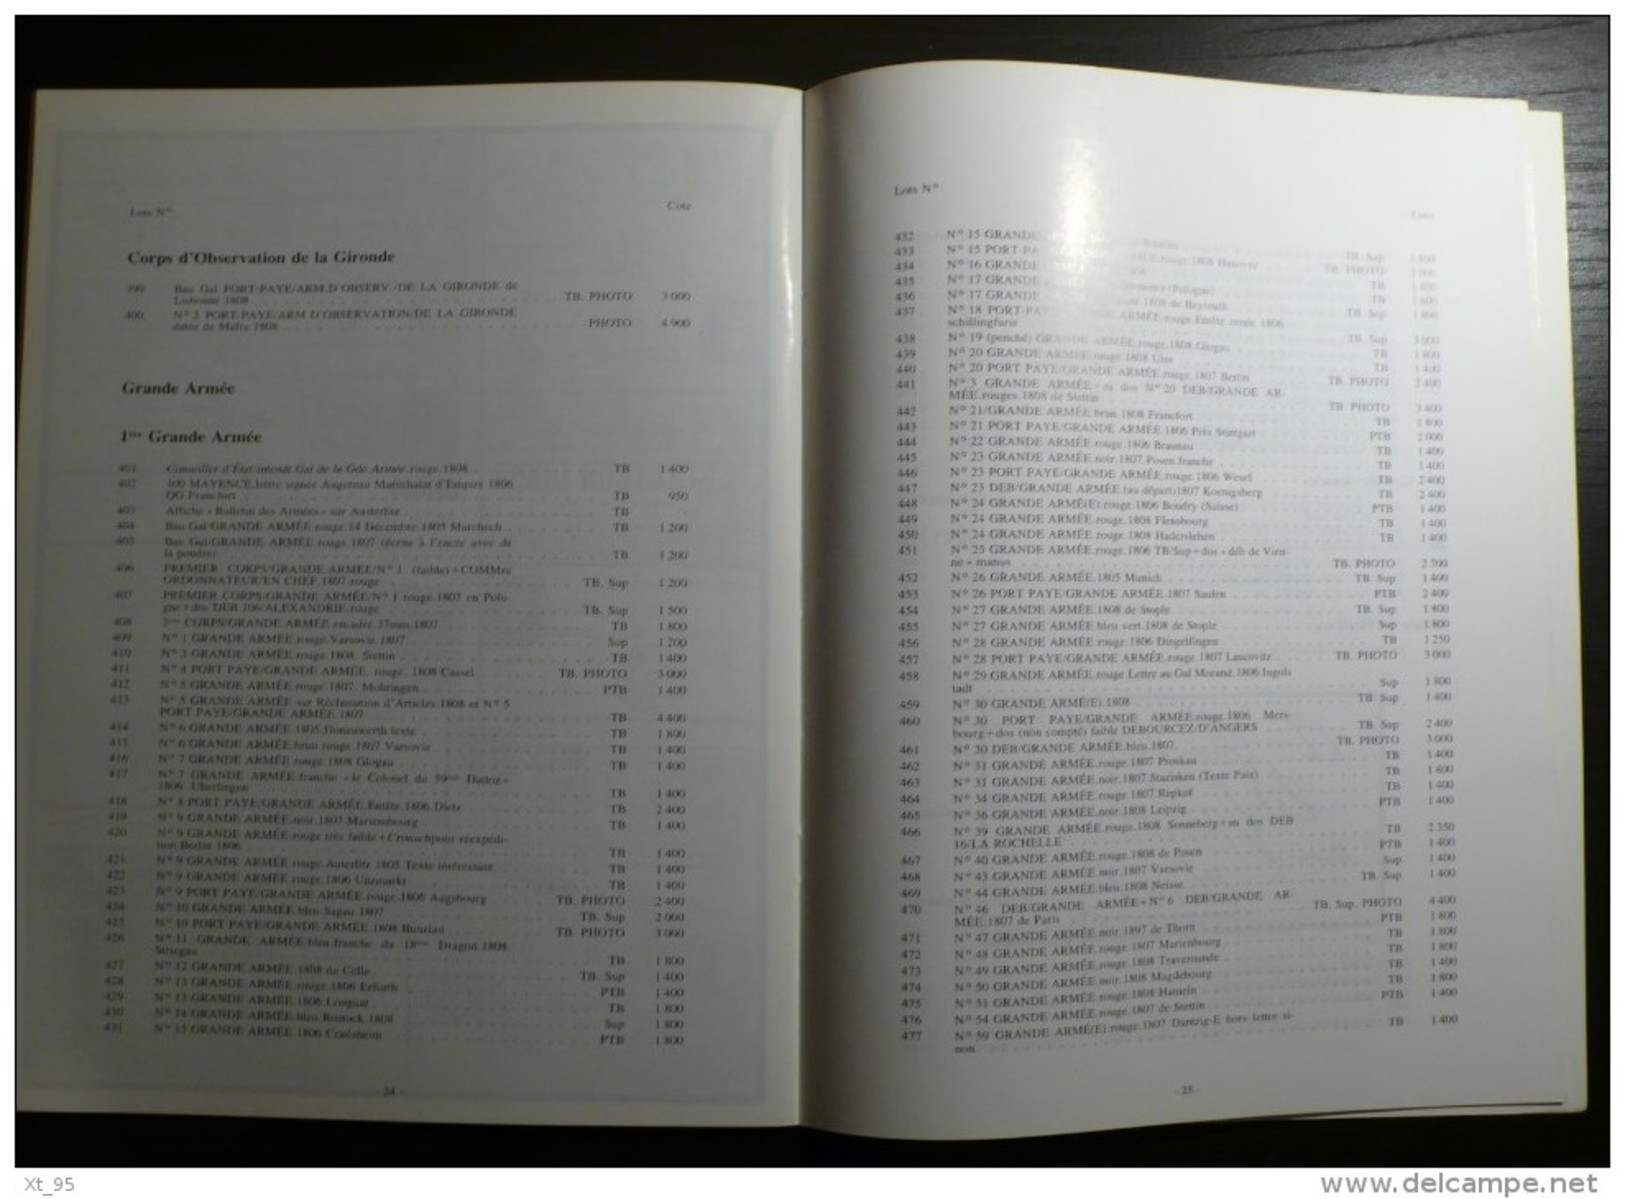 Vente Aux Encheres Collection Dubus - 1988 - 40 Pages - Catalogues De Maisons De Vente